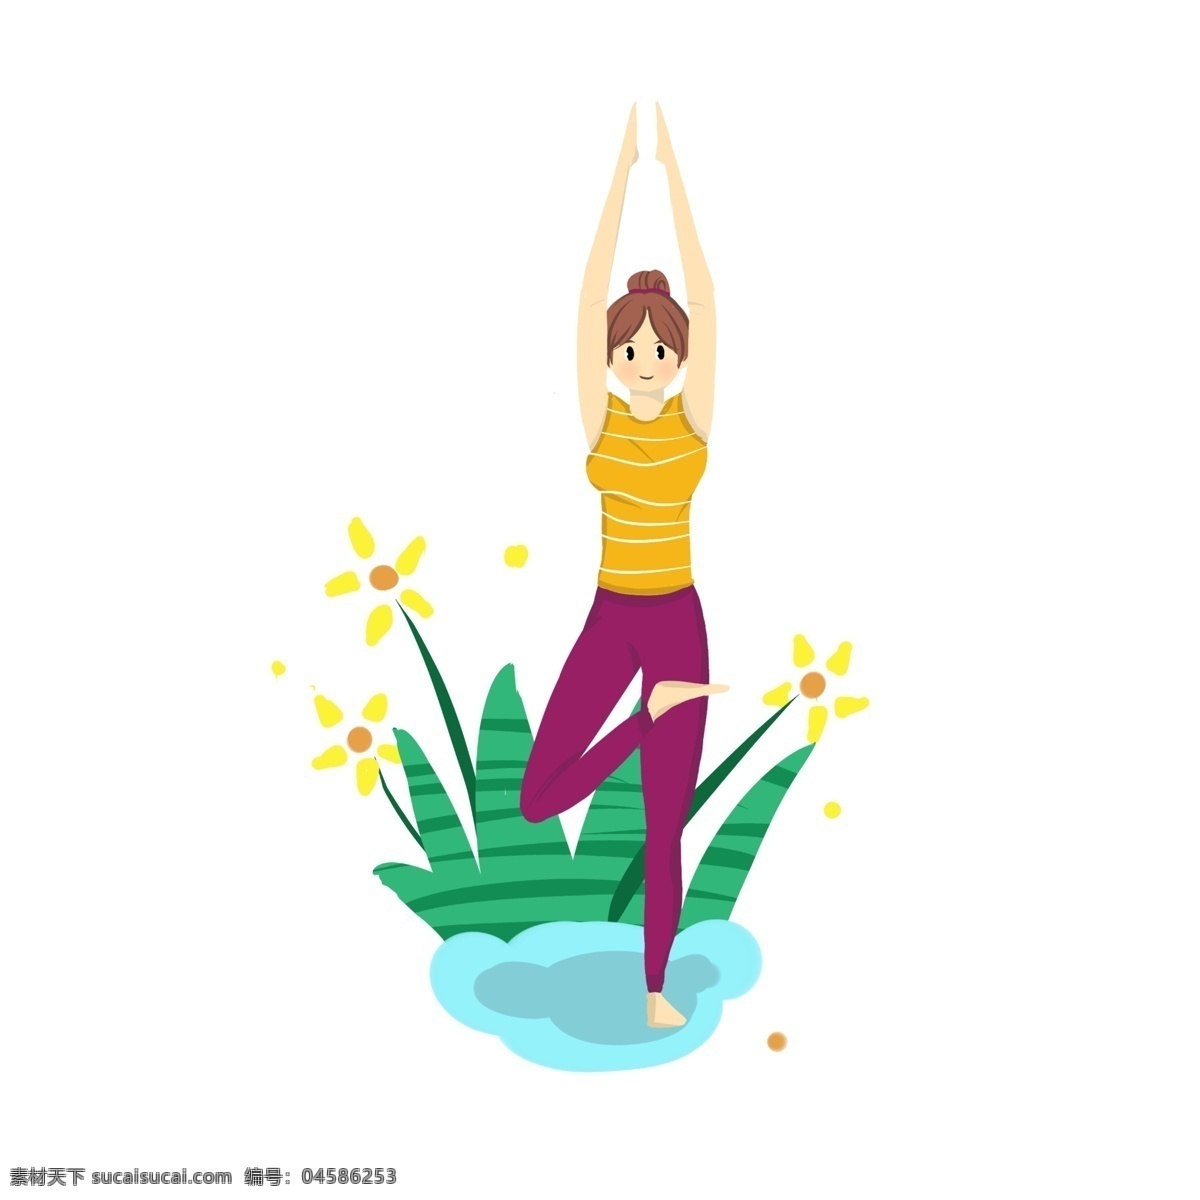 瑜伽 女孩 站 姿 手 绘图 站立 举手 花朵 黄色 绿色 植物 树叶 丛林 草丛 瑜伽垫 瑜伽服 瘦身 矢量图 卡通